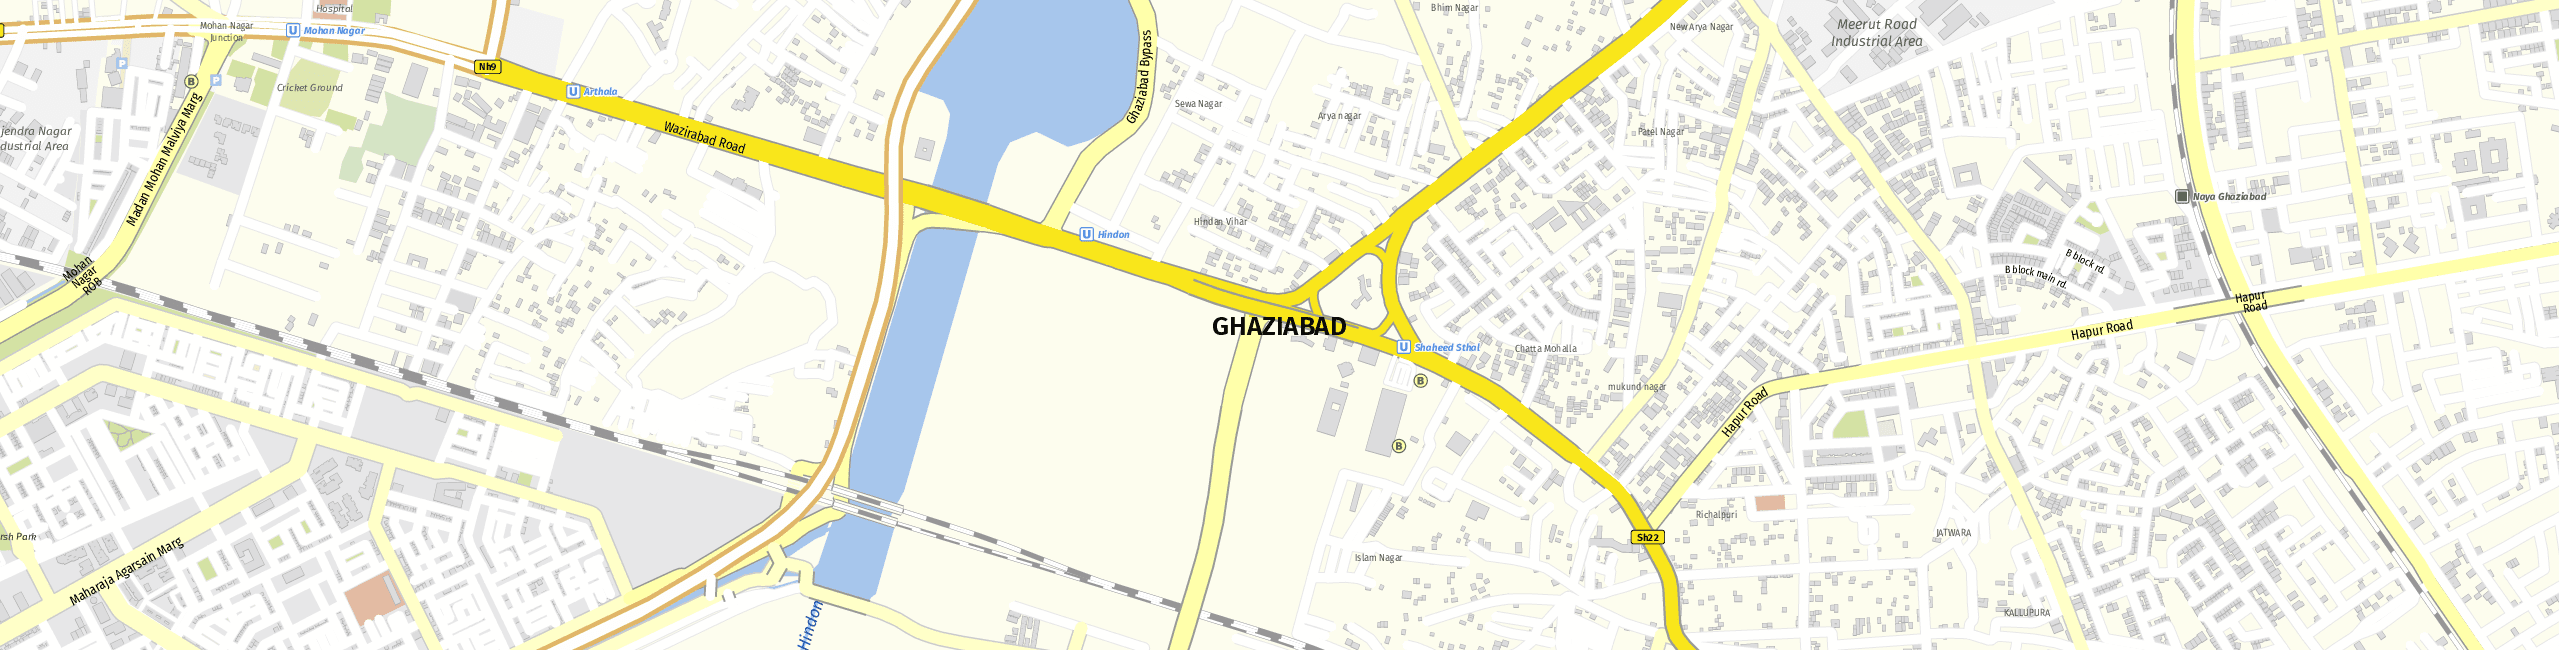 Stadtplan Ghaziabad zum Downloaden.